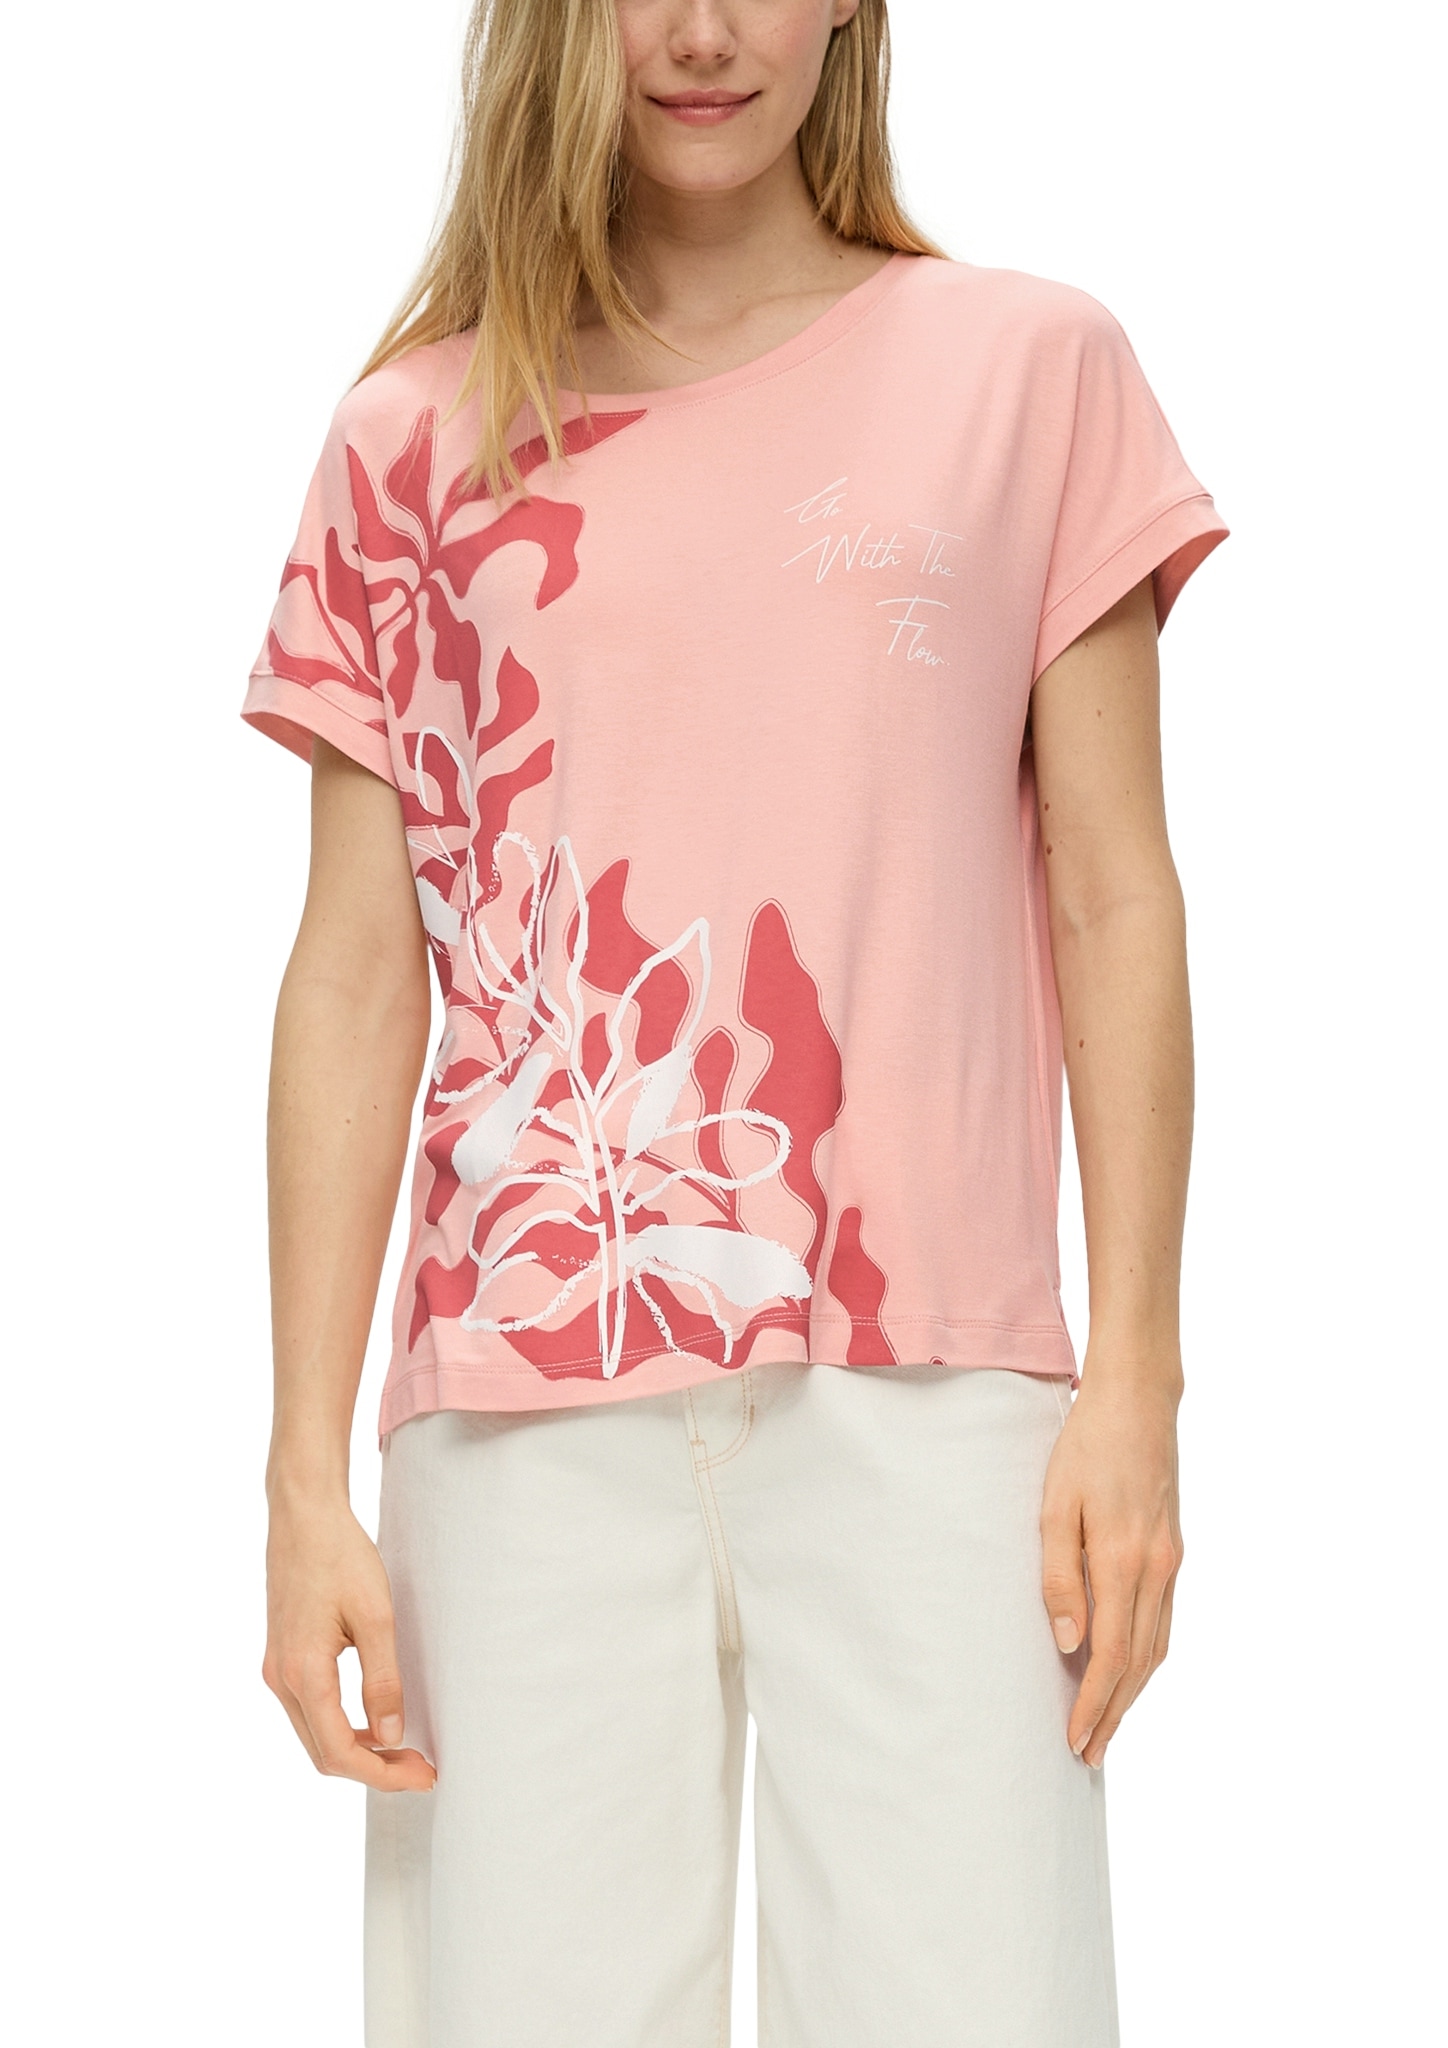 s.Oliver Print-Shirt, mit grossem Floral-Print